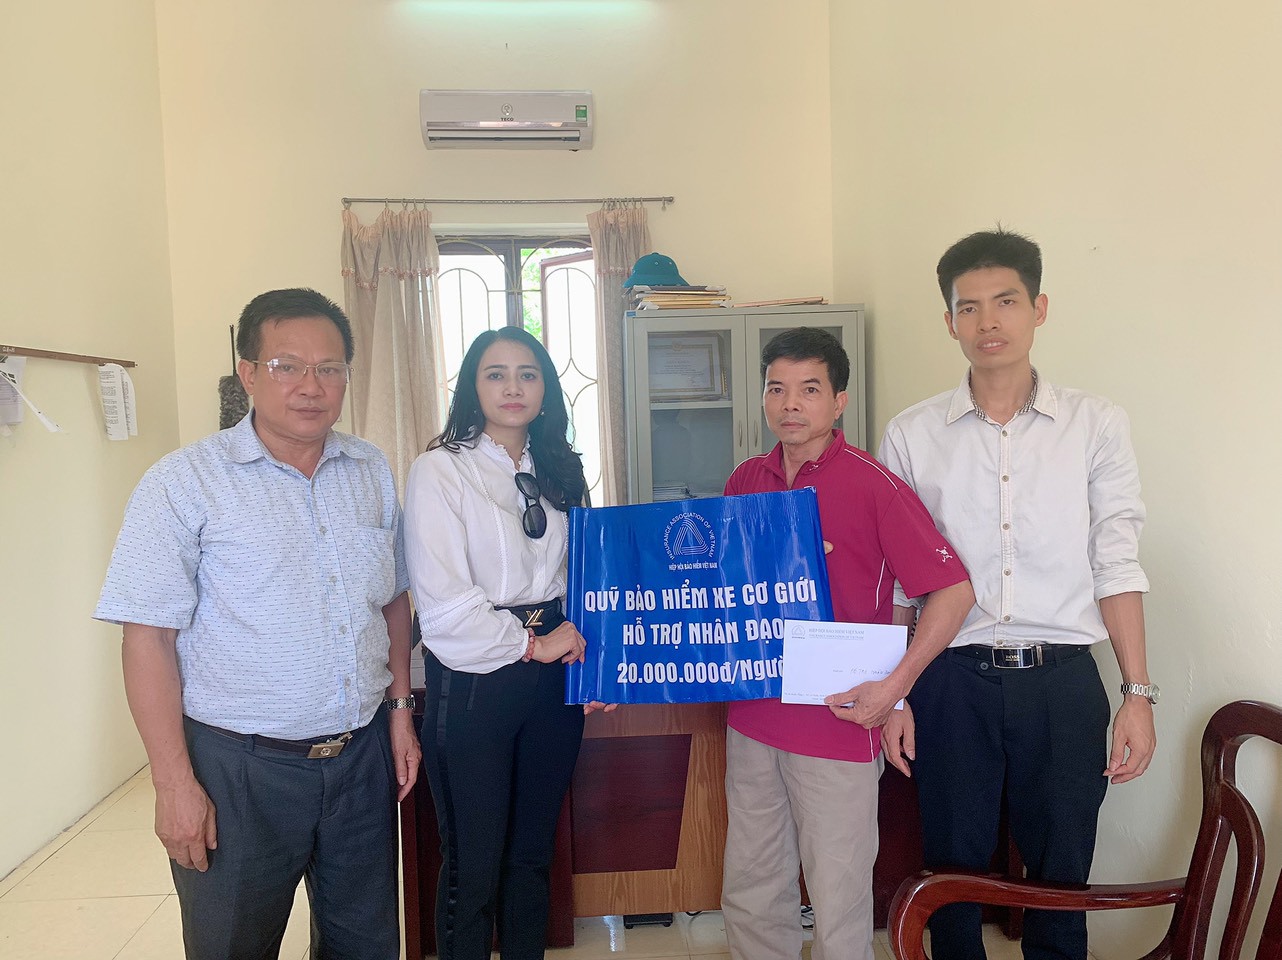 Đại diện của Quỹ bảo hiểm xe cơ giới và đại diện UBND xã Cẩm Điền cùng trao hỗ trợ nhân đạo cho gia đình nạn nhân Nguyễn Công Dương.